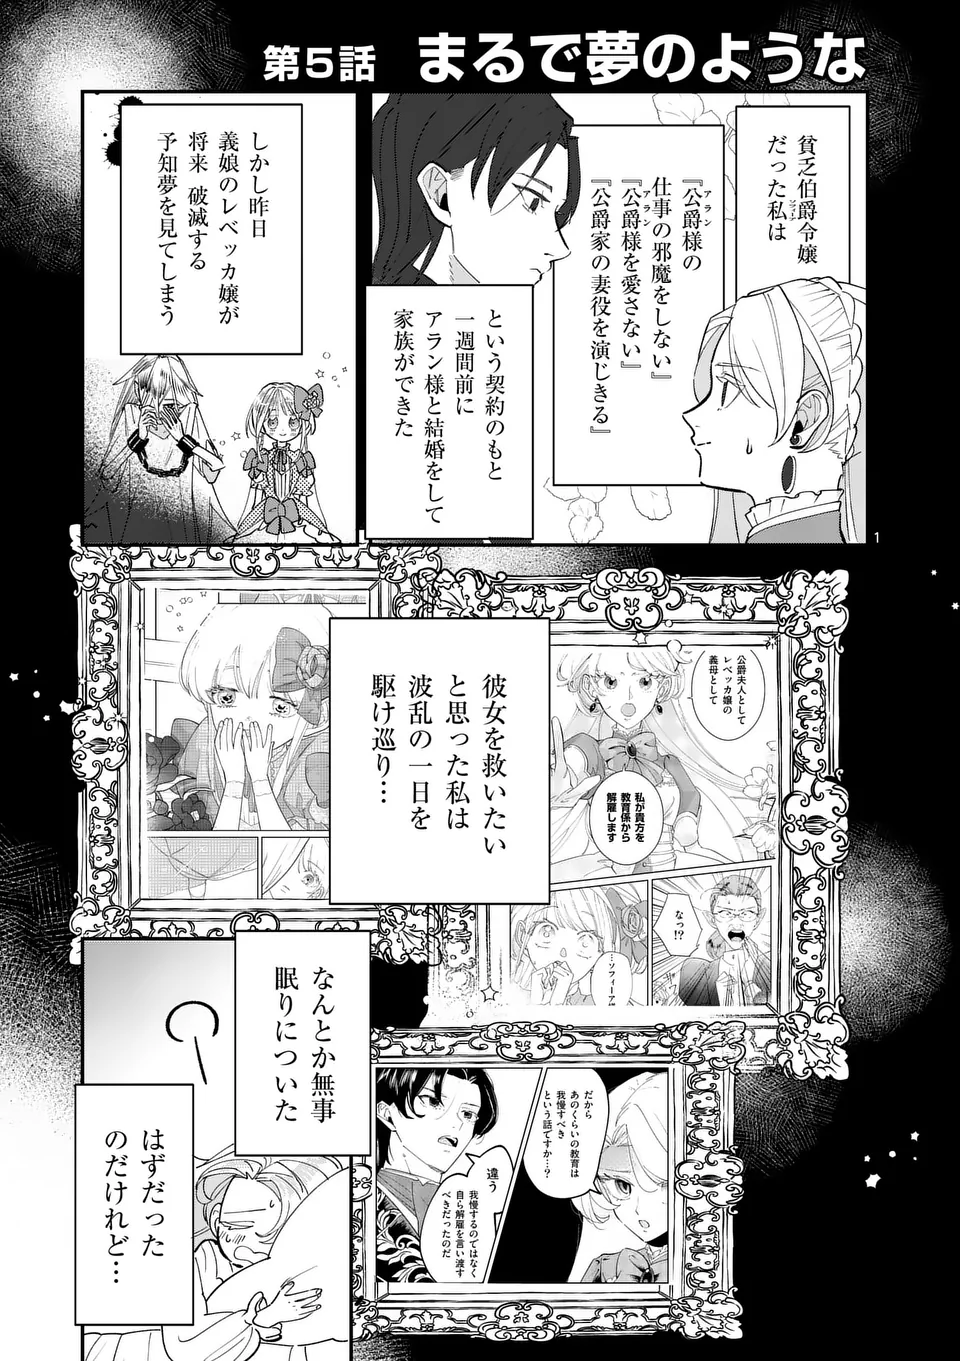 Gijou ga Akuyaku Reijou to shite Hametsu suru Koto wo Shitta no de, Mechakucha Aishimasu - Chapter 5 - Page 1